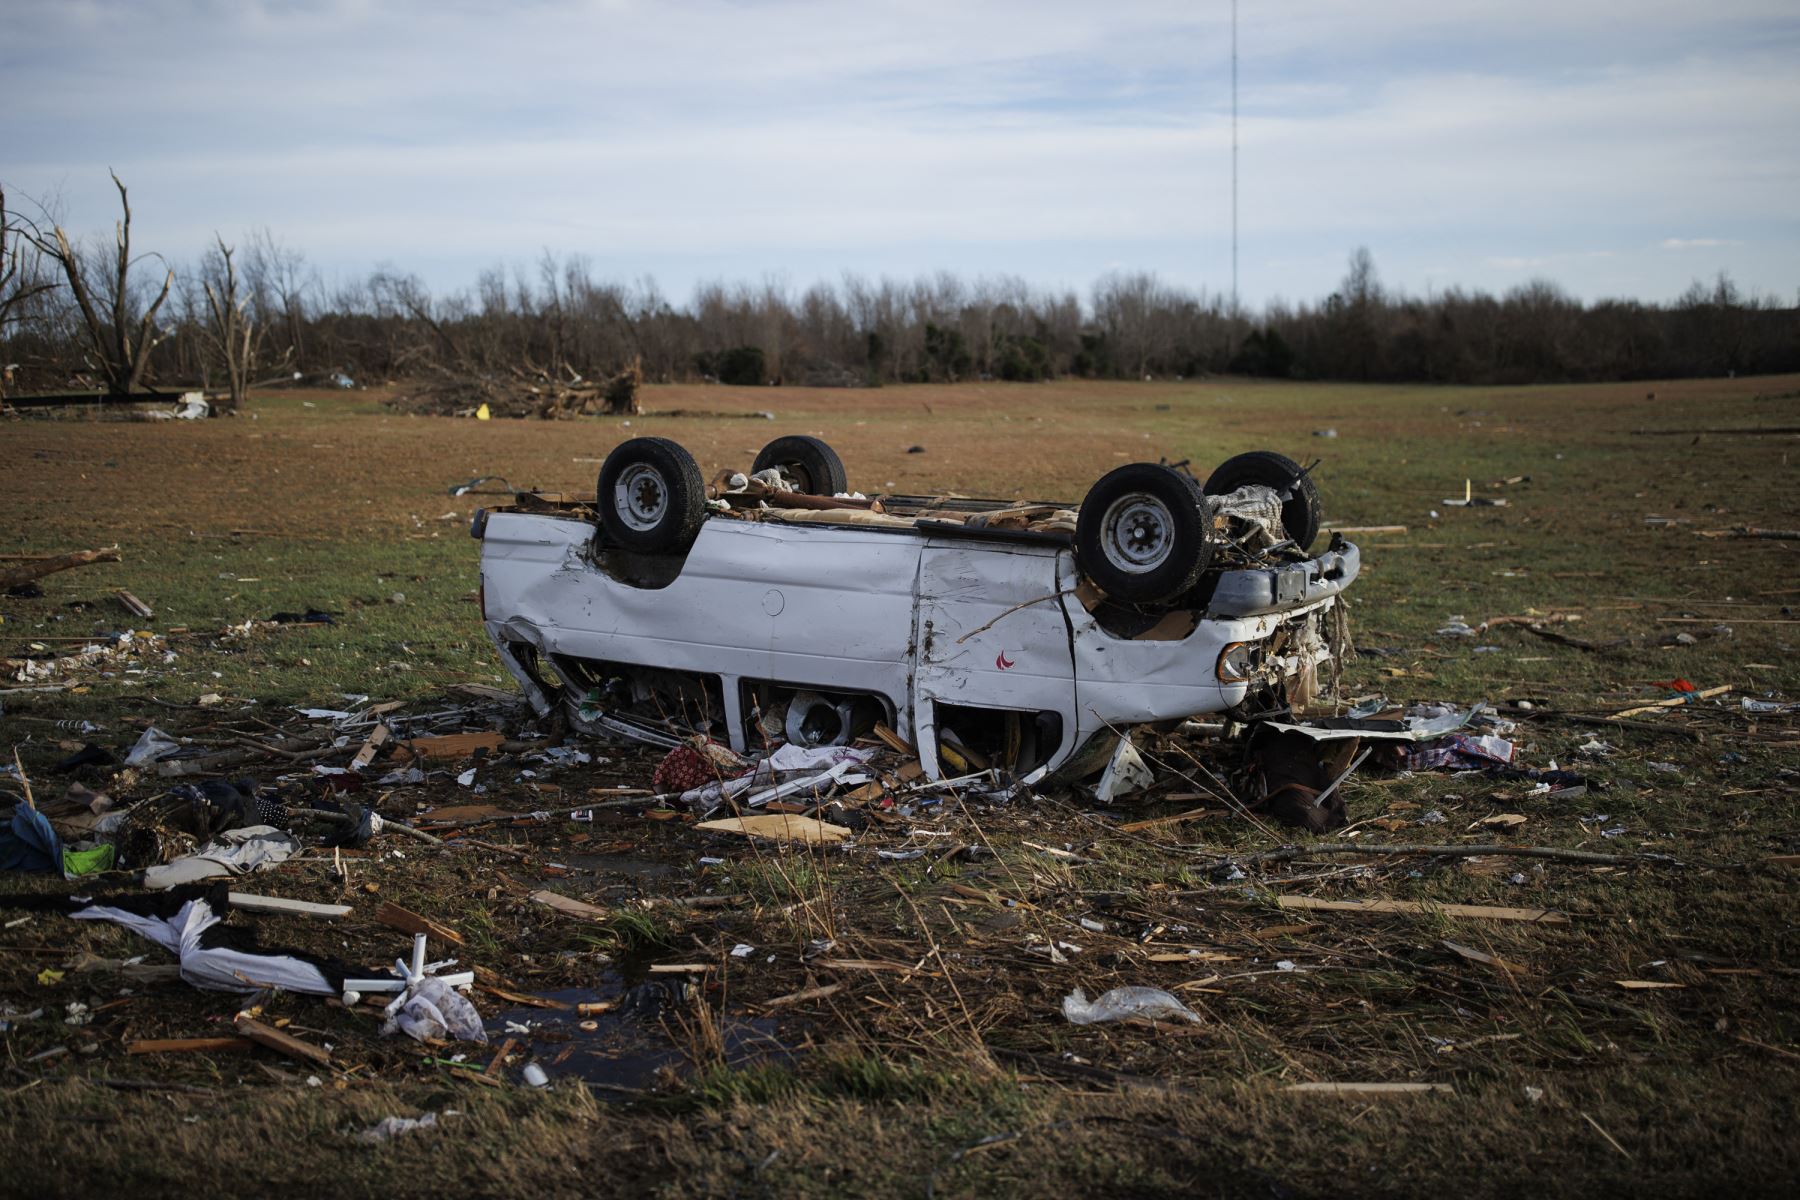 Una camioneta volcada en un campo vacío en un vecindario rural que fue devastado por un tornado la noche anterior, en Mayfield, Kentucky, en los Estados Unidos. Foto: AFP